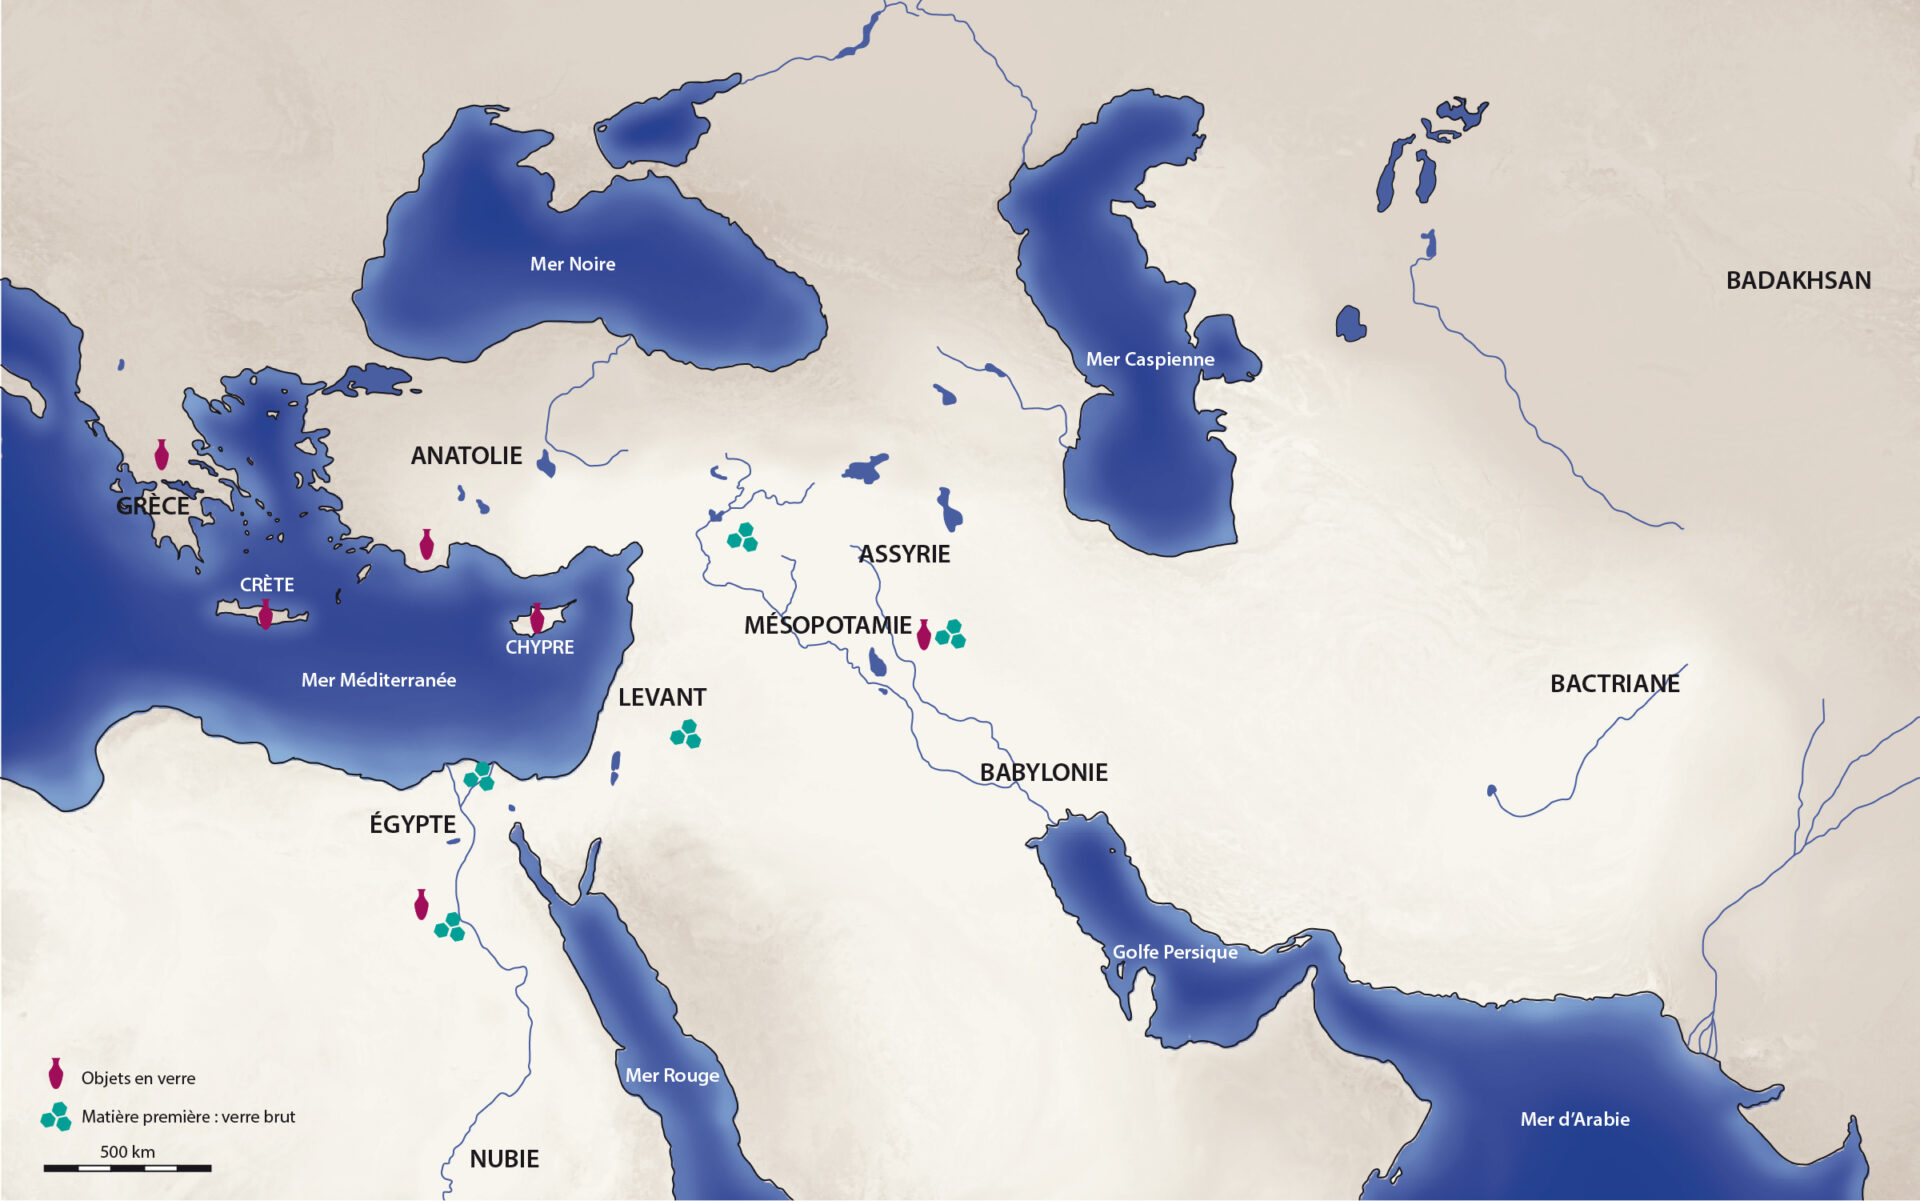 Carte de la distribution du verre brut et des objets de verrerie finis dans le bassin méditerranéen antique